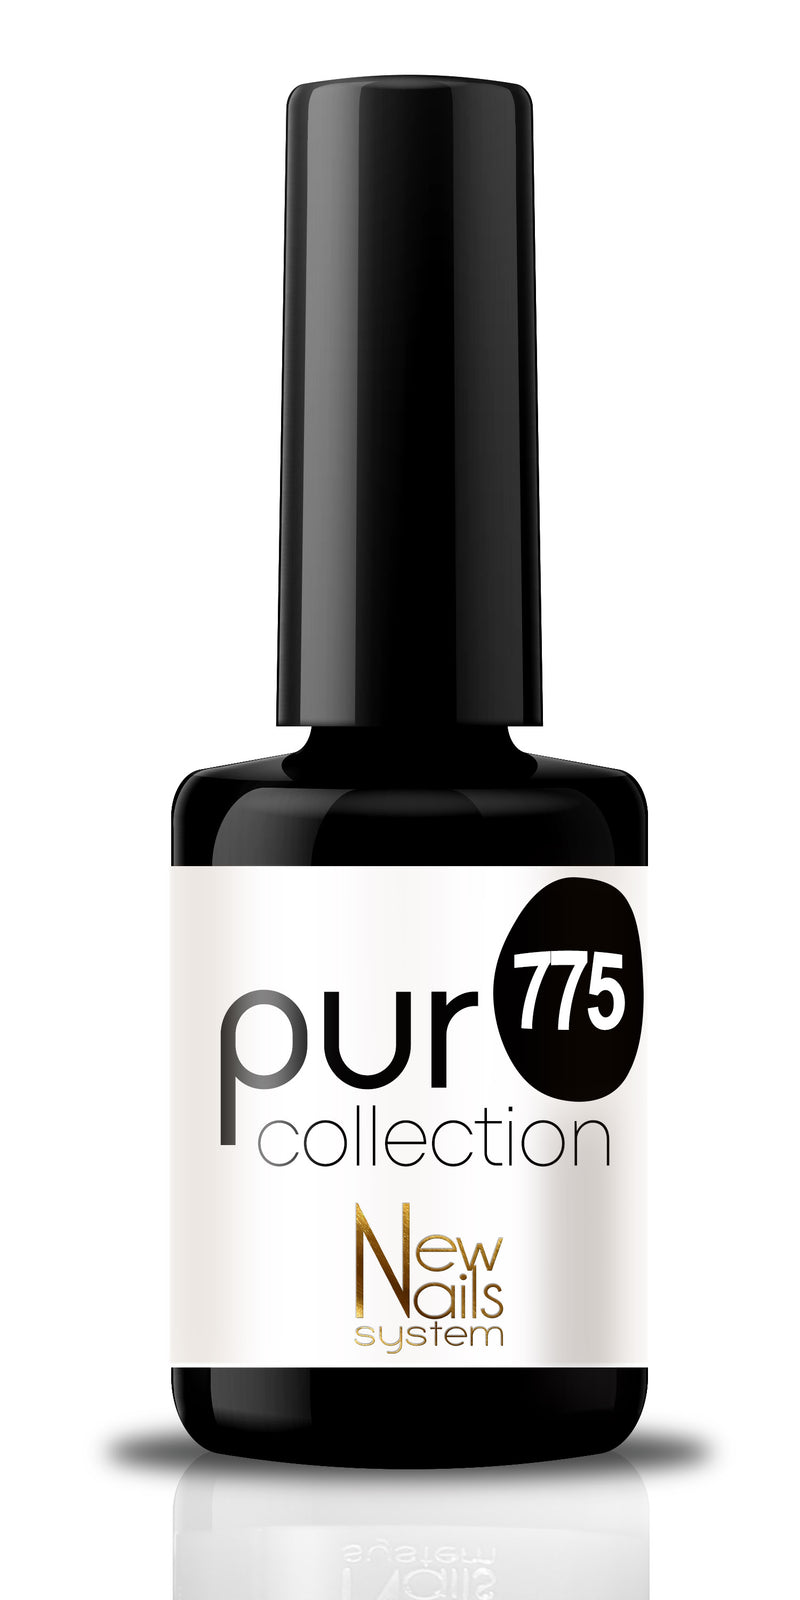 Puro collection 775 colore Black & White semipermanente 5ml